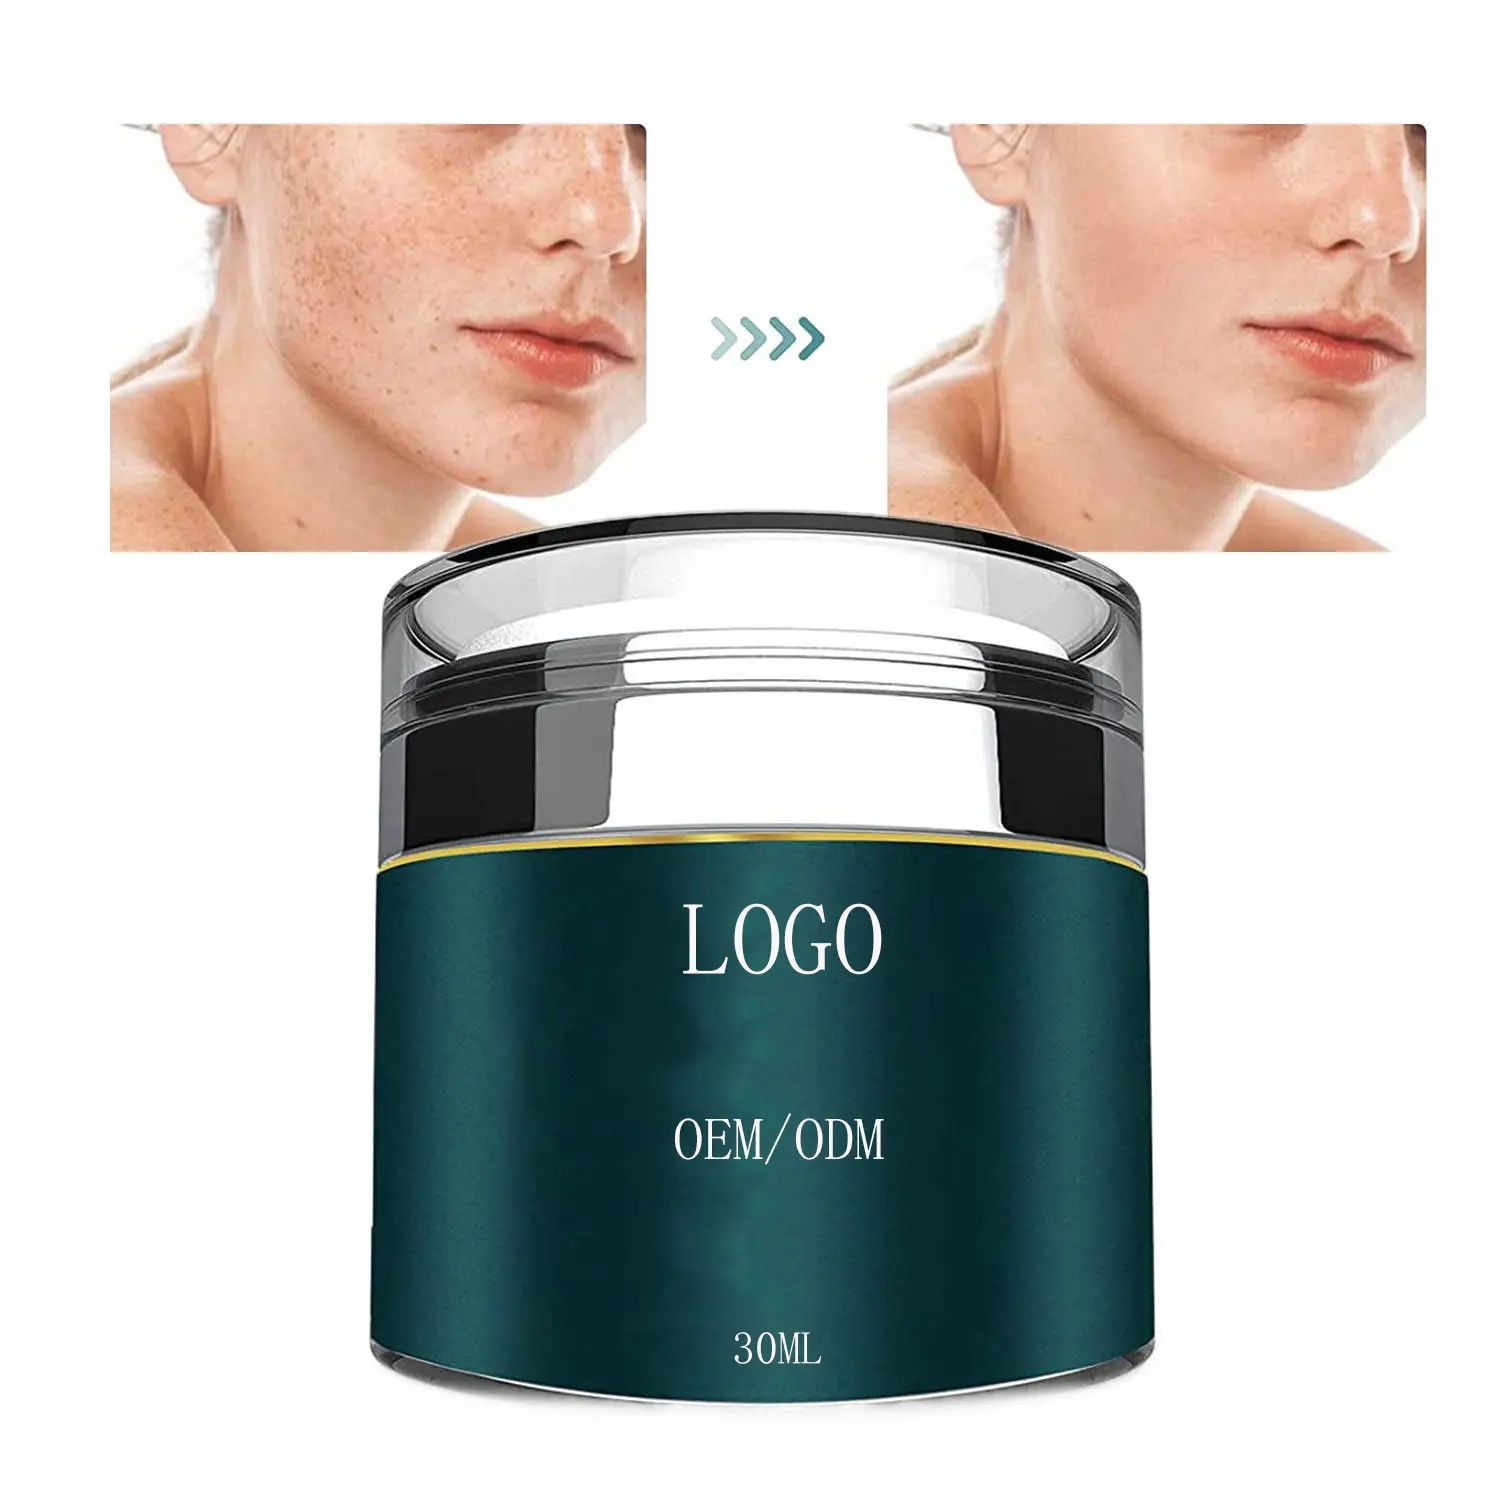 OEM/ODM 30ml retinol cream Hot Sale Skin Care Anti Aging Face Cream Firming Whitening Vitamin C Collagen Repair Face Cream